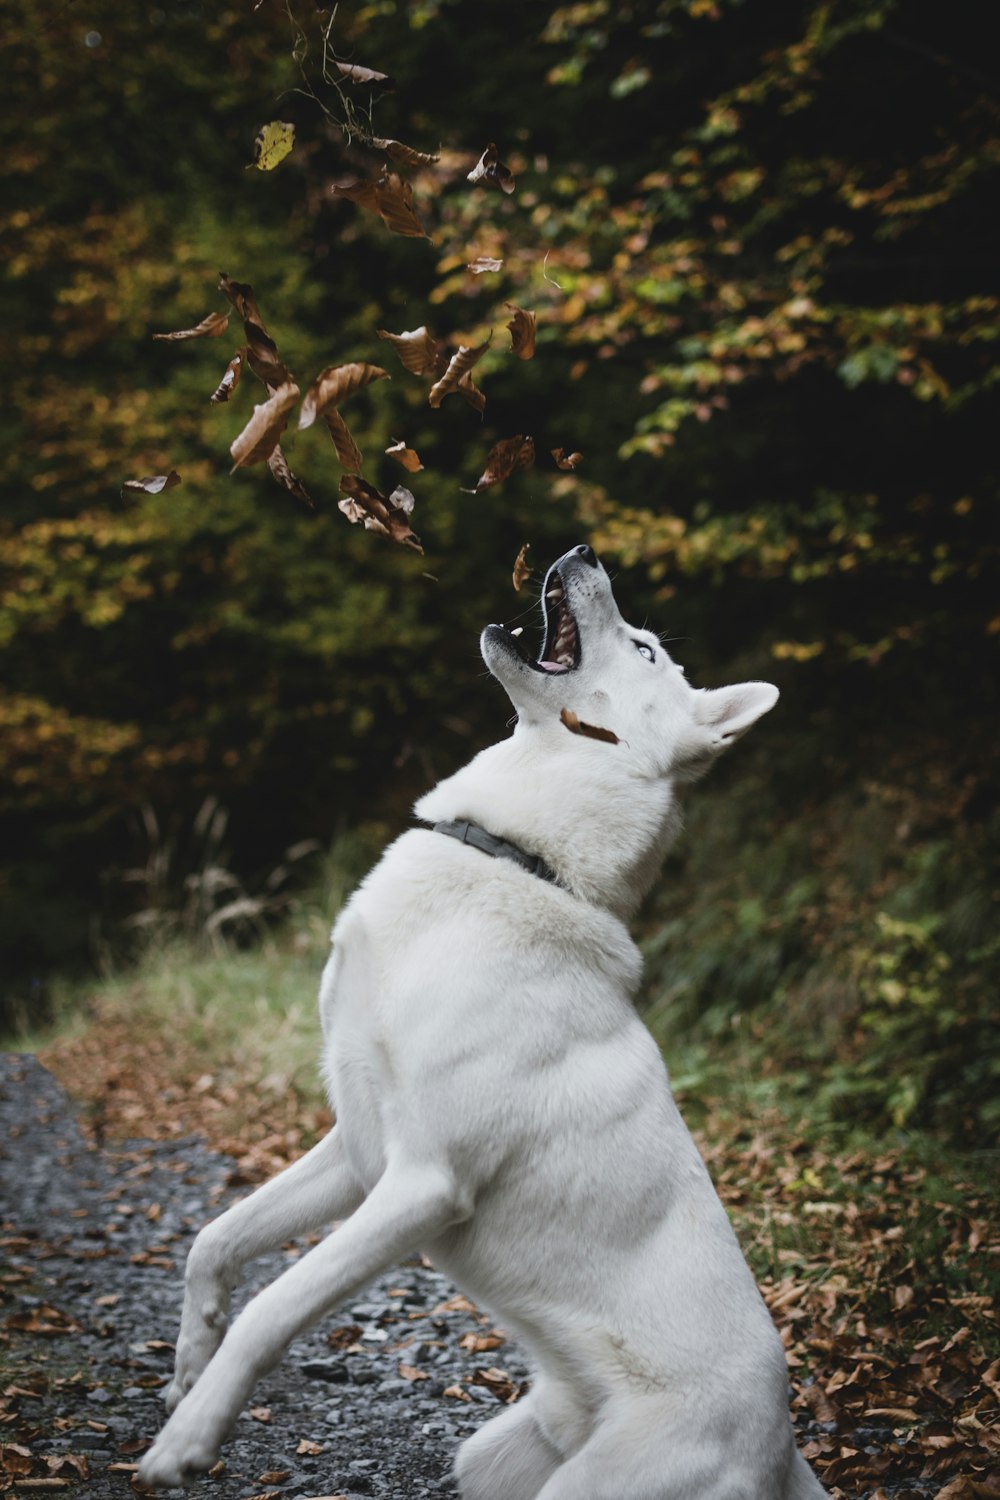 short-coated white dog